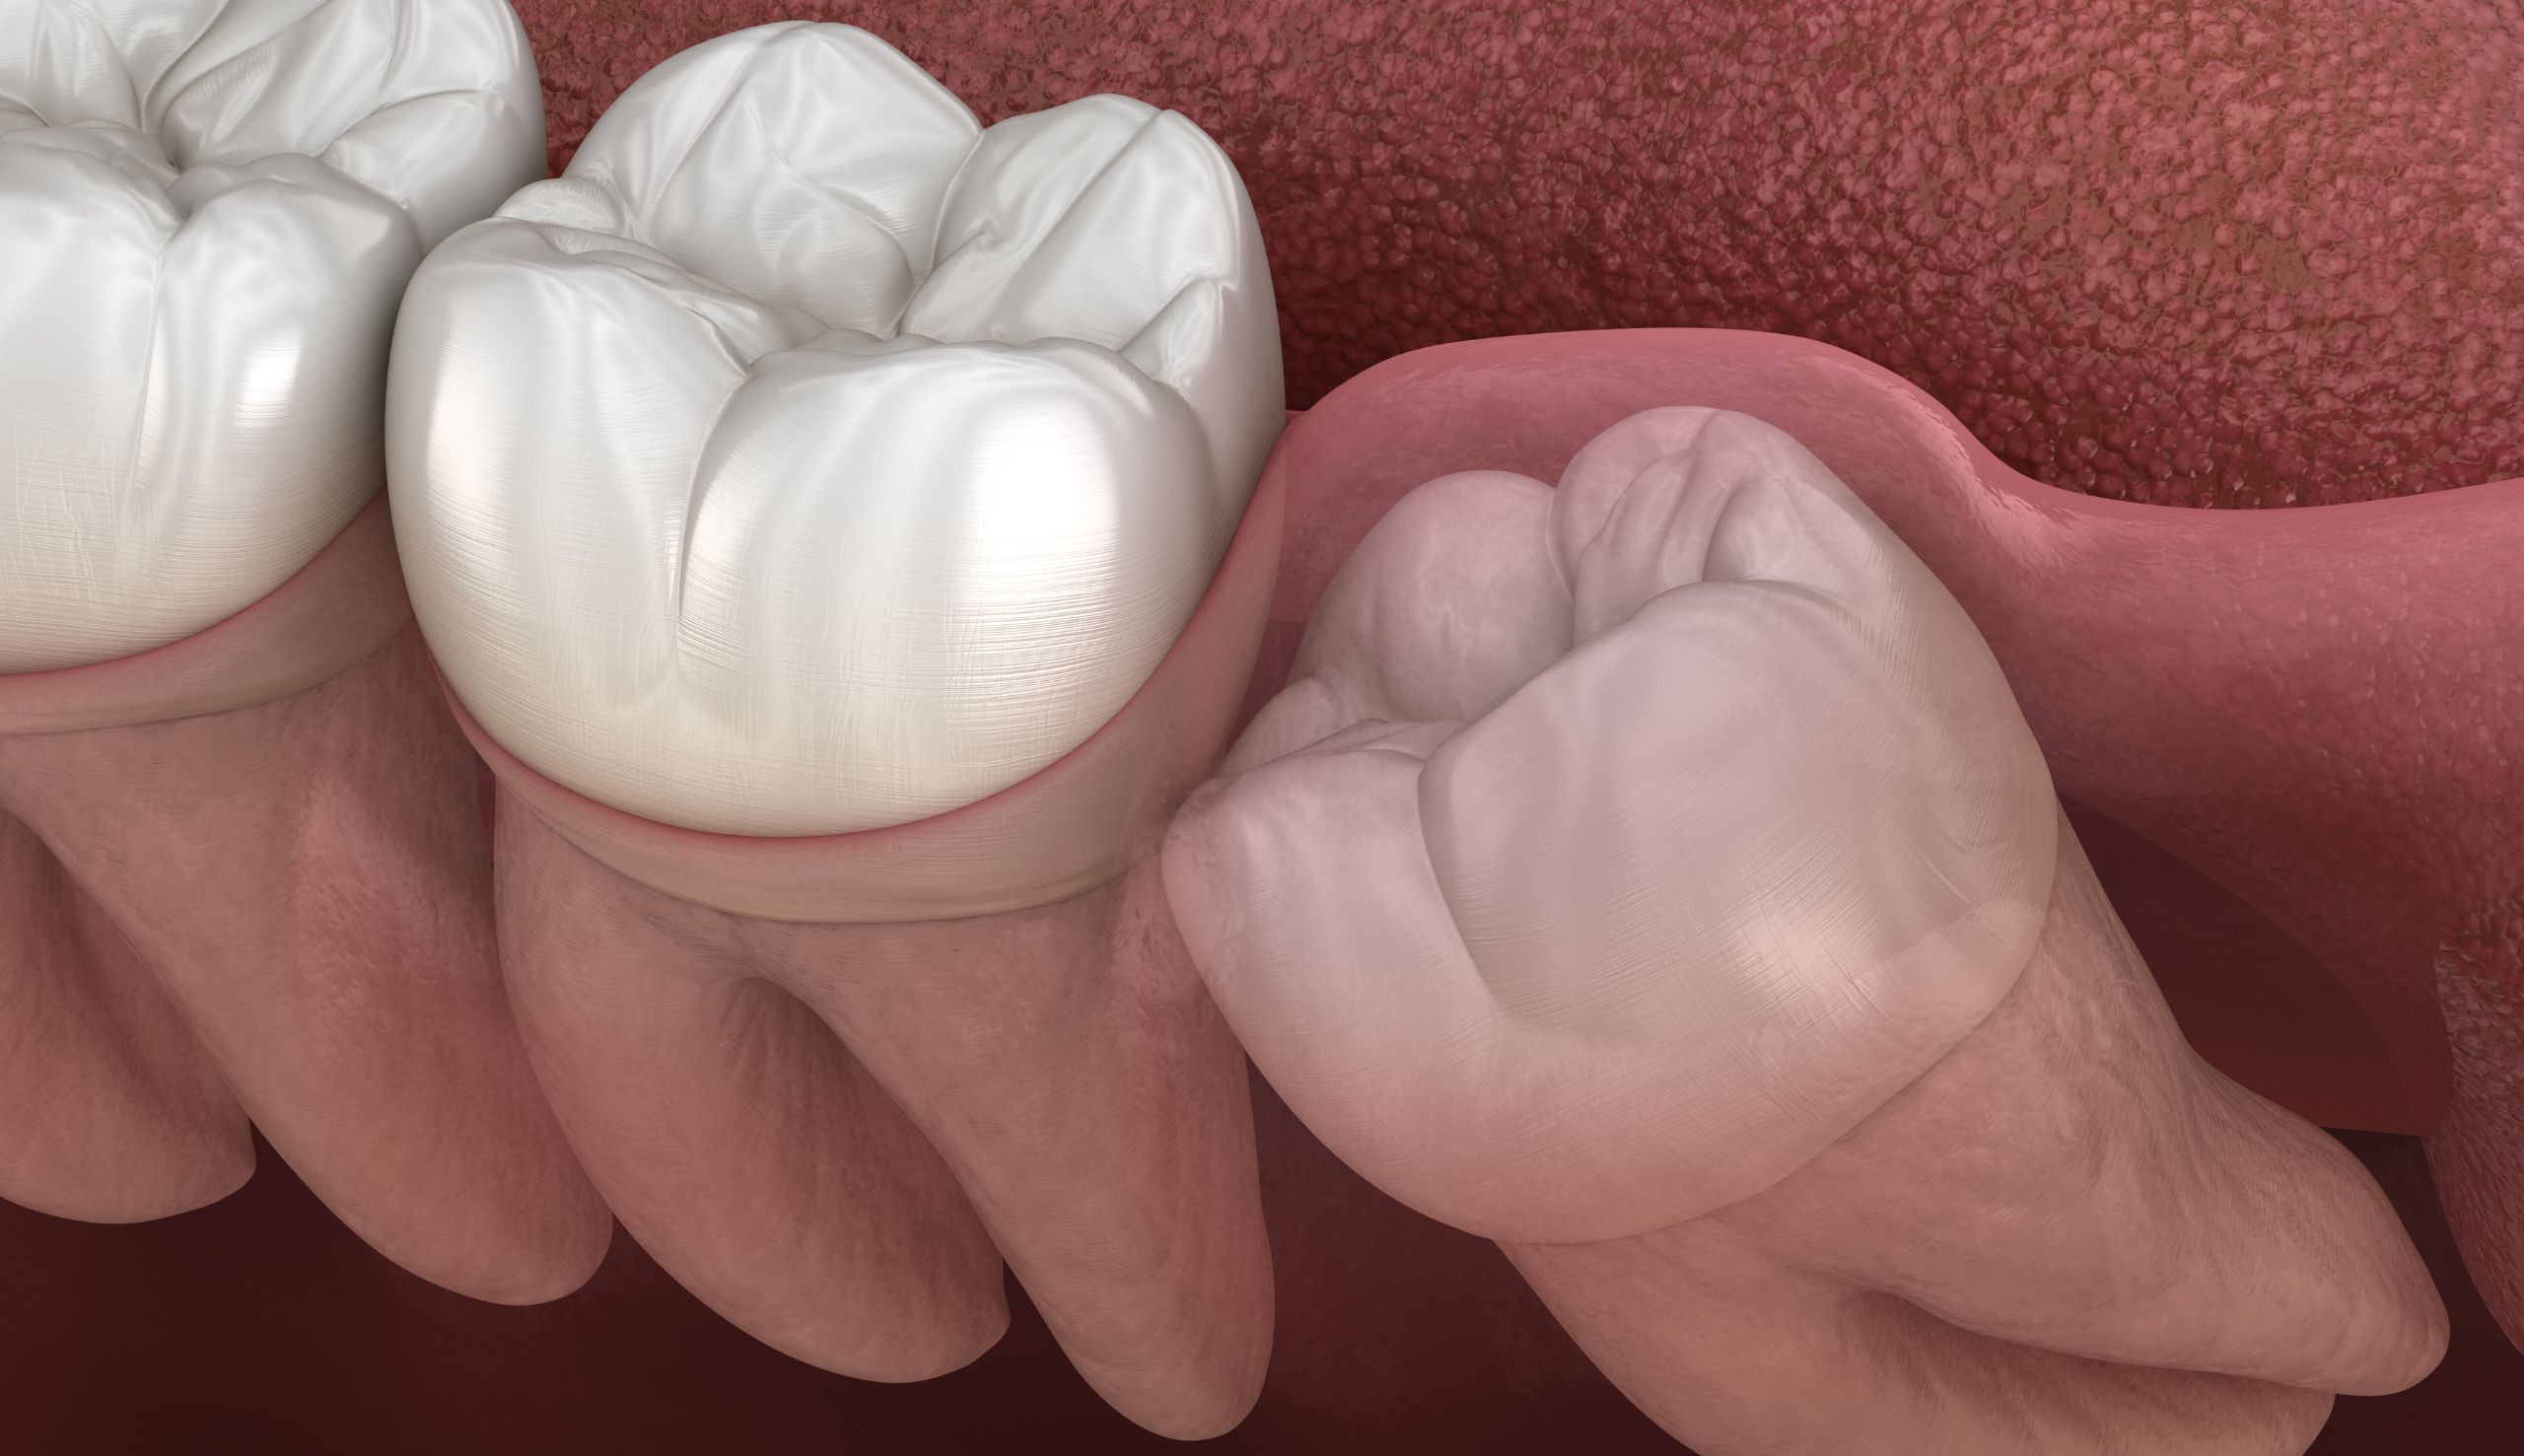 Les dents peuvent-elles bouger après un traitement orthodontique ? | Clinique dentaire Sana Oris | Paris